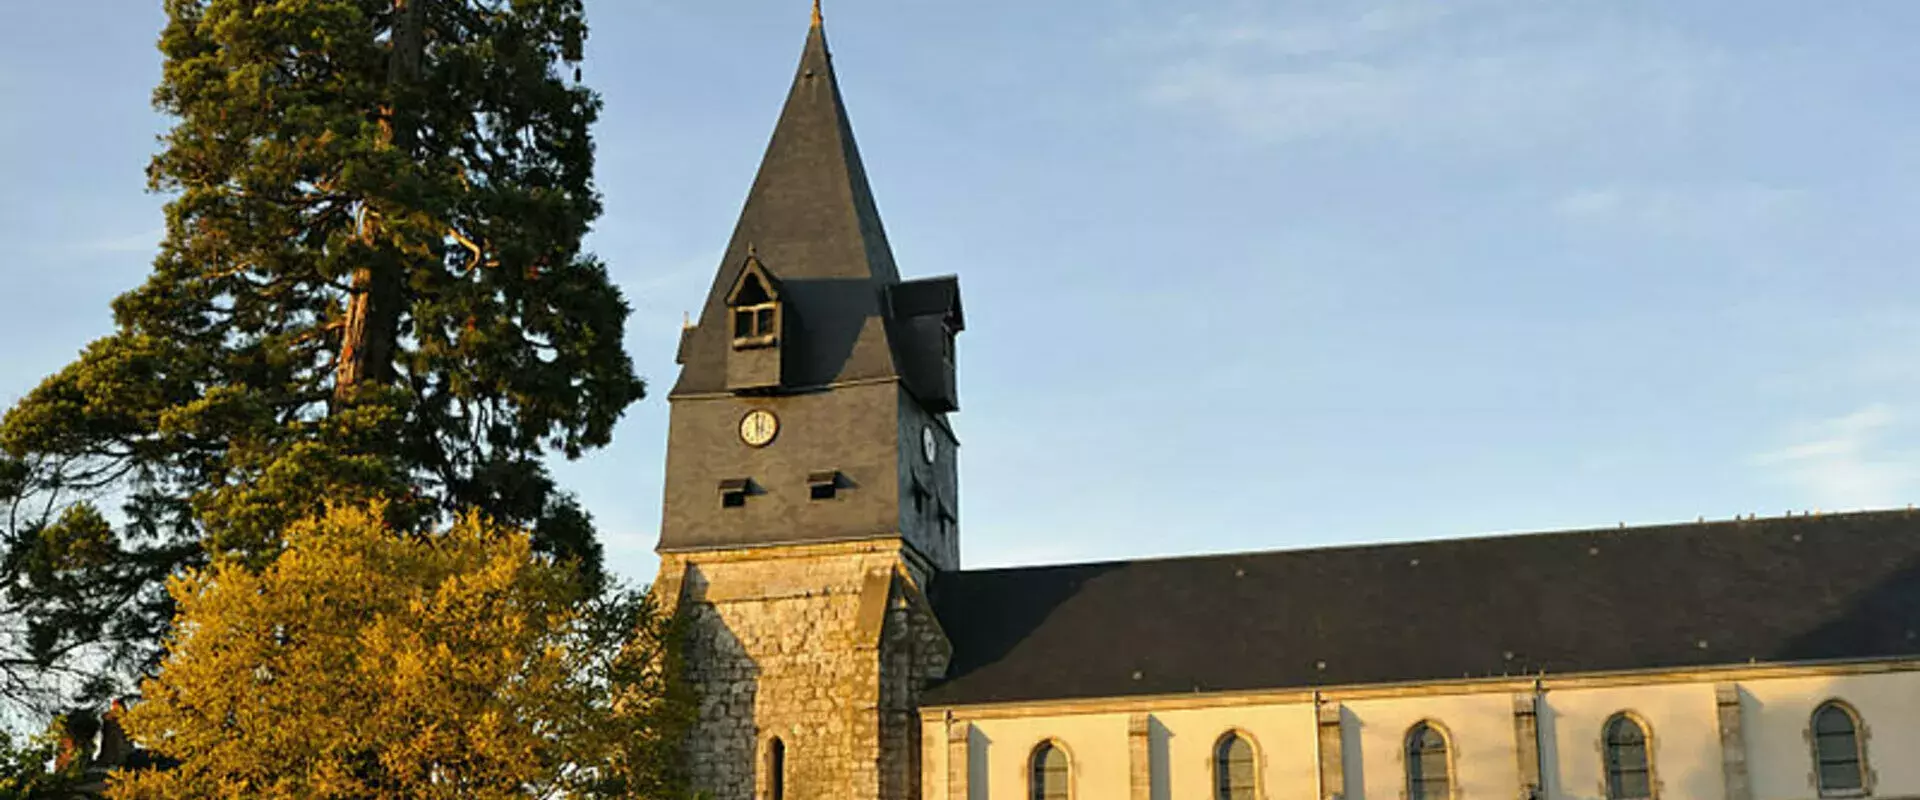 Bienvenue sur le site officiel de la mairie de Aschères-Le-Marché (45) Loiret